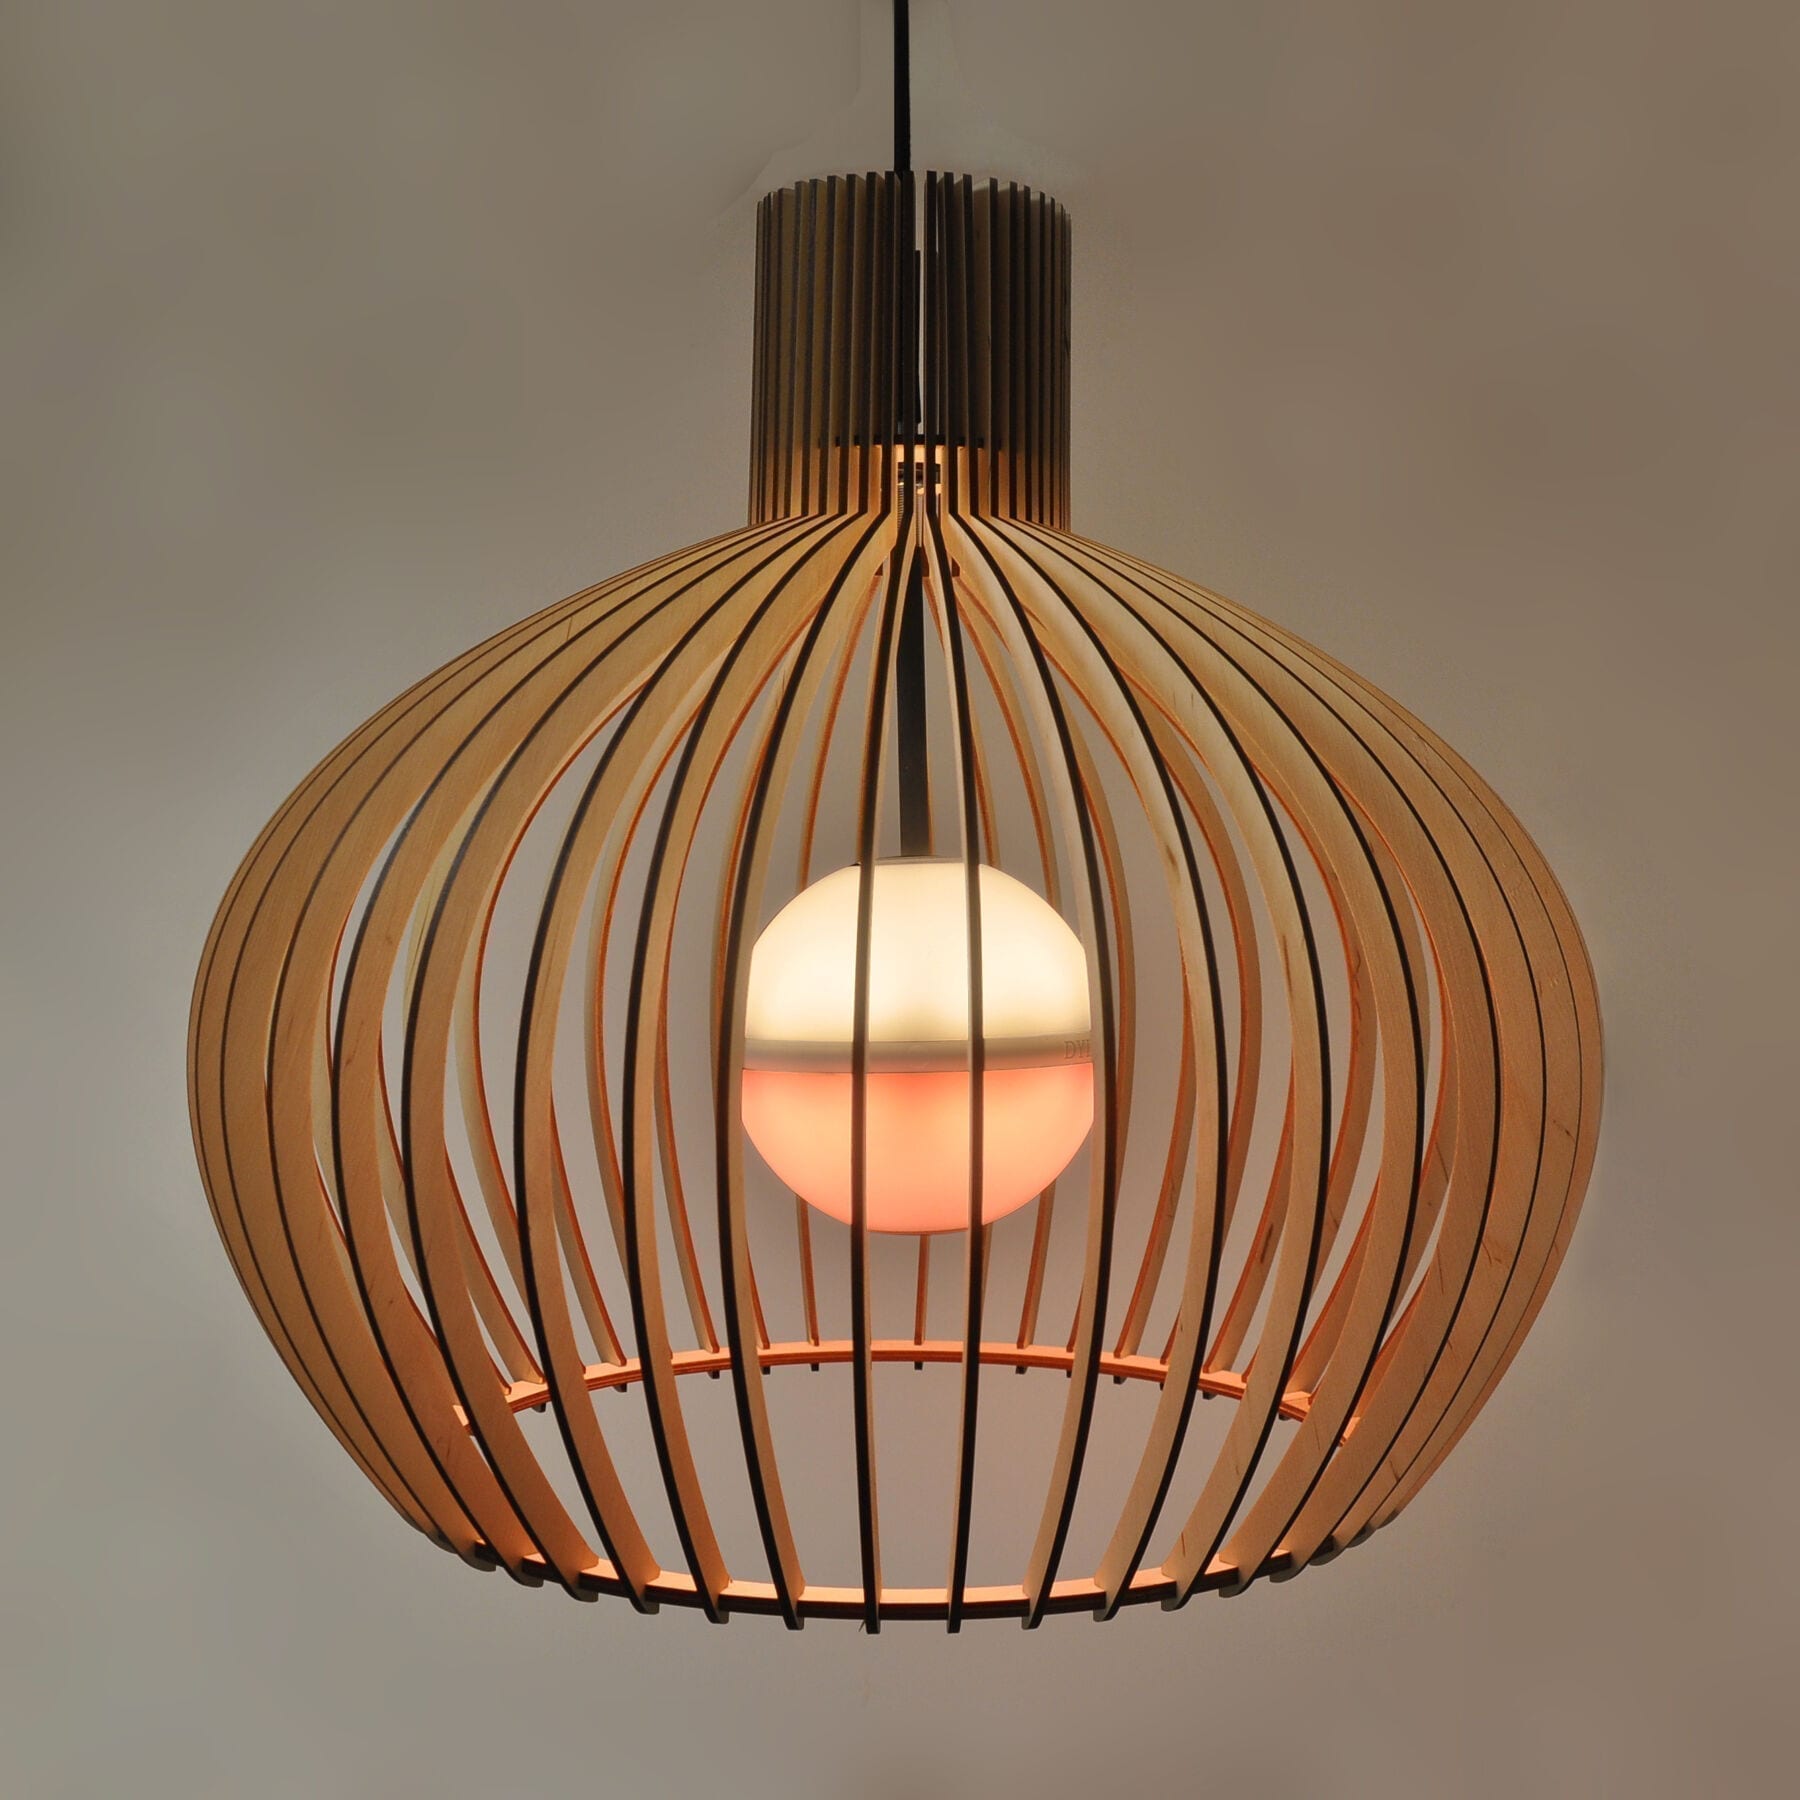 moeilijk Inactief Besluit Druppel houten lamp • Dydell (NL)